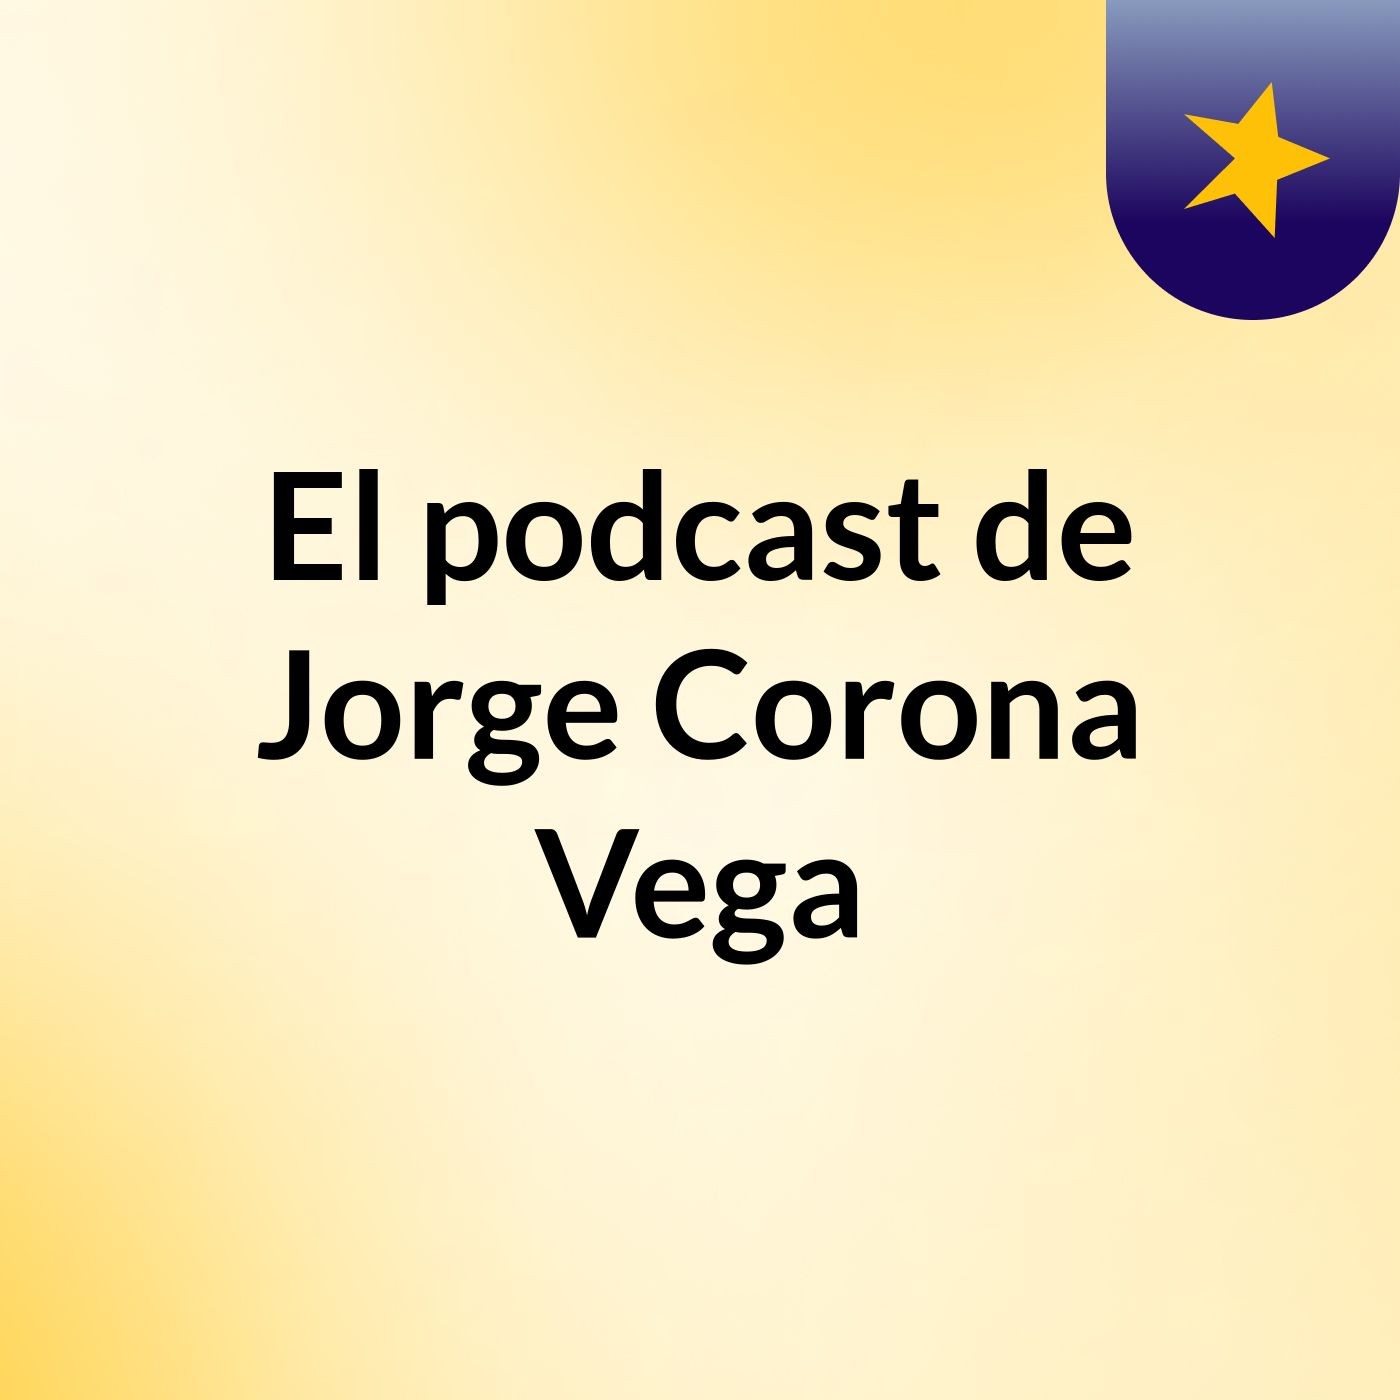 El podcast de Jorge Corona Vega